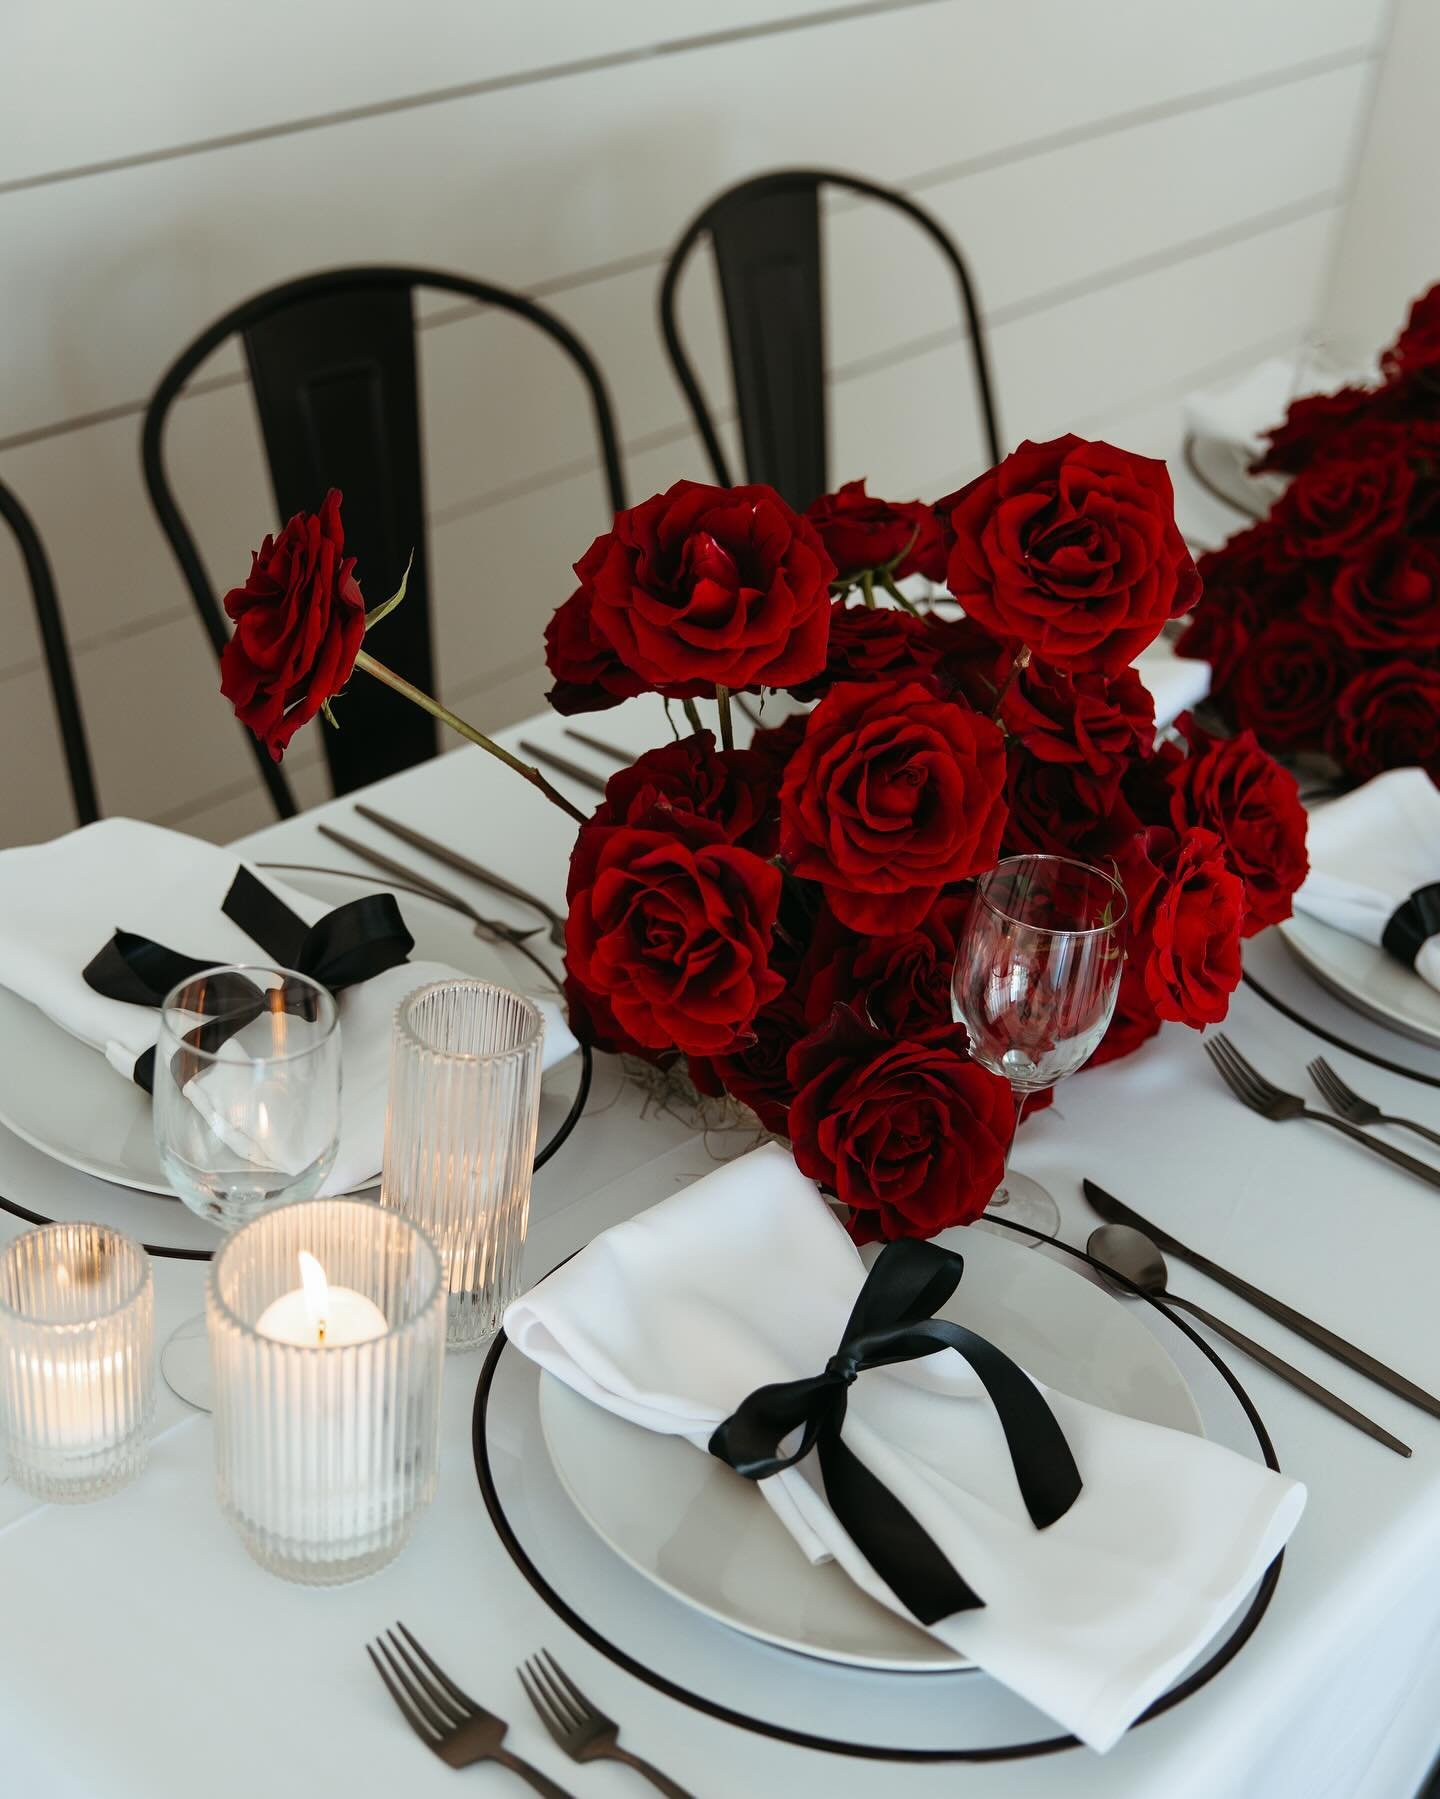 Monochromatic table florals?? I&rsquo;m totally down 🌹

#dallaswedding #fortworthwedding #texaswedding #texasweddingplanner #dallasweddingplanner #fortworthweddingplanner #weddingplanner #styledshoot #styledwedding #realwedding #fallwedding #winterw